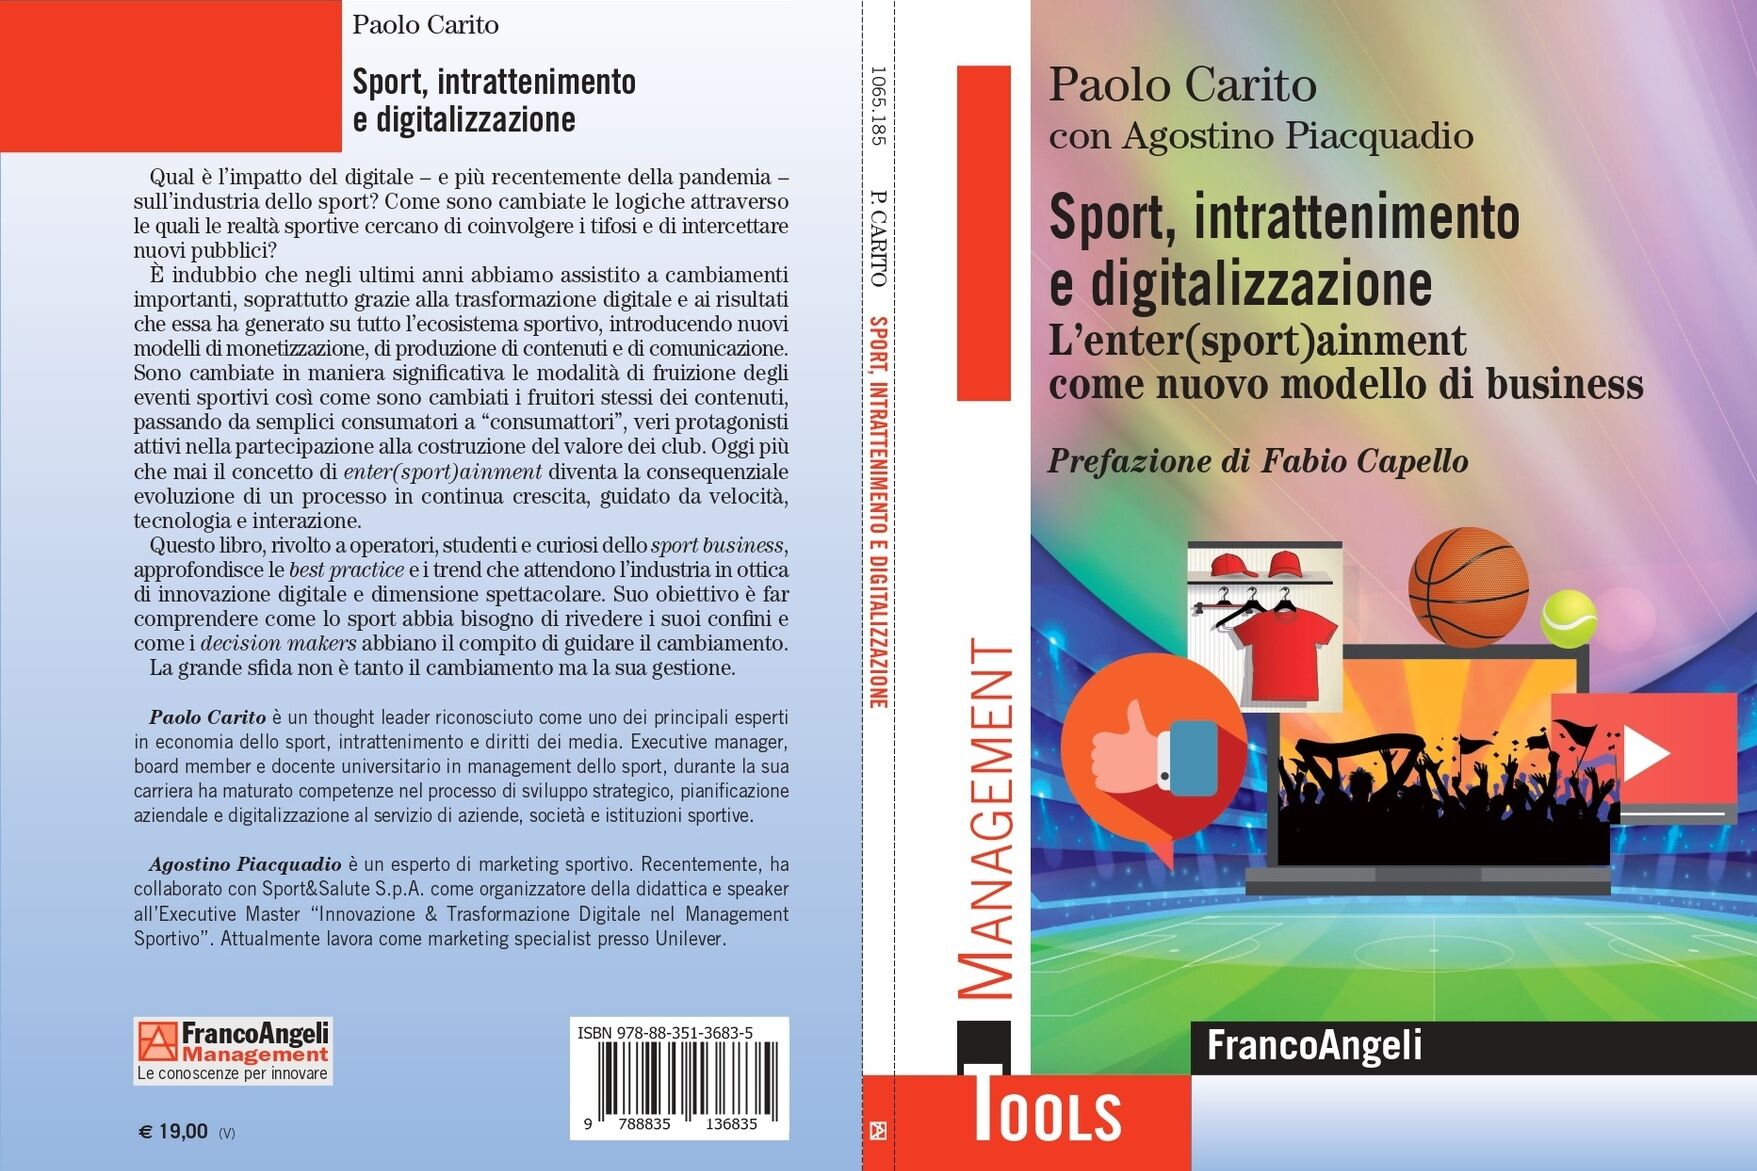 eğlence: “Spor, Eğlence ve Dijitalleşme” kitabının kapağı ve arka kapağı. Paolo Carito tarafından Agostino Piacquadio ile birlikte yazılan ve Franco Angeli Editore tarafından yayınlanan Enter(sport)ainment as a new business model”